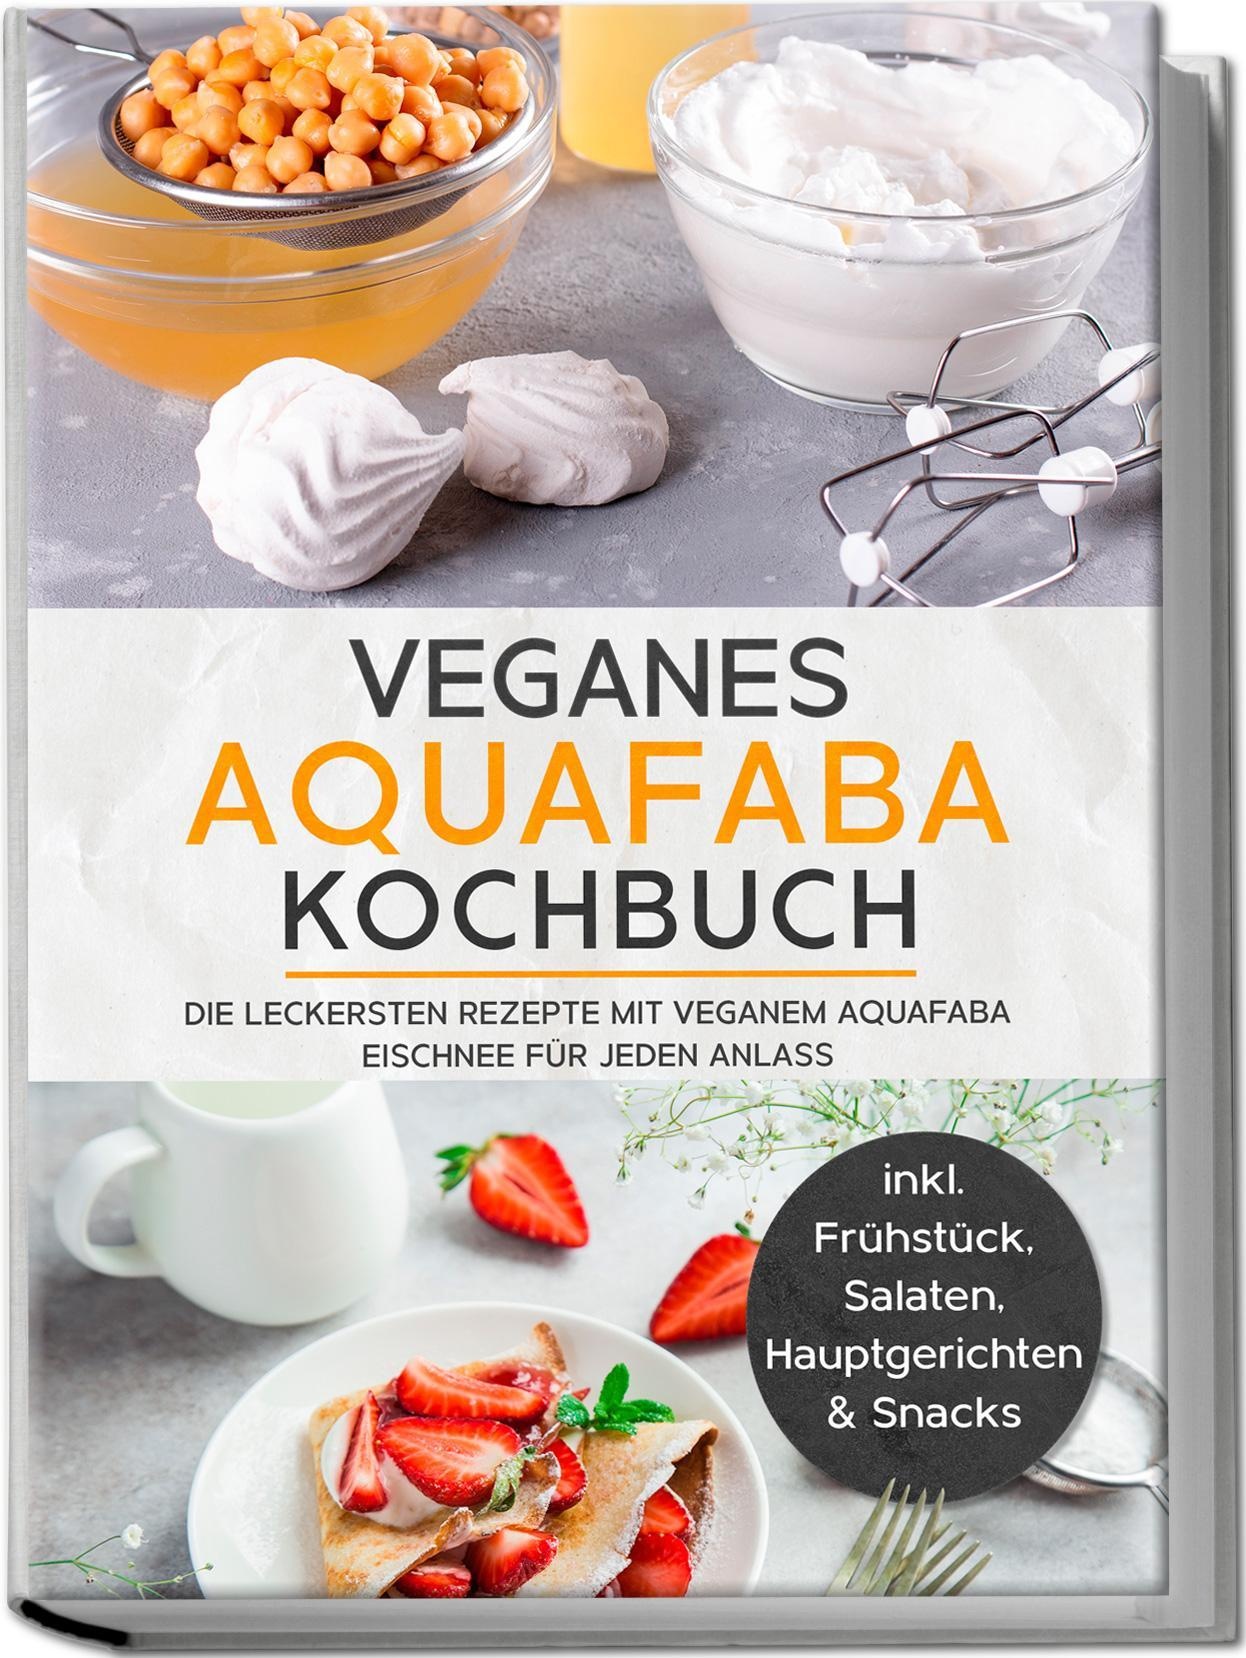 Veganes Aquafaba Kochbuch: Die Leckersten Rezepte Mit Veganem Aquafaba Eischnee Für Jeden Anlass - Inkl. Frühstück  Salaten  Hauptgerichten & Snacks -